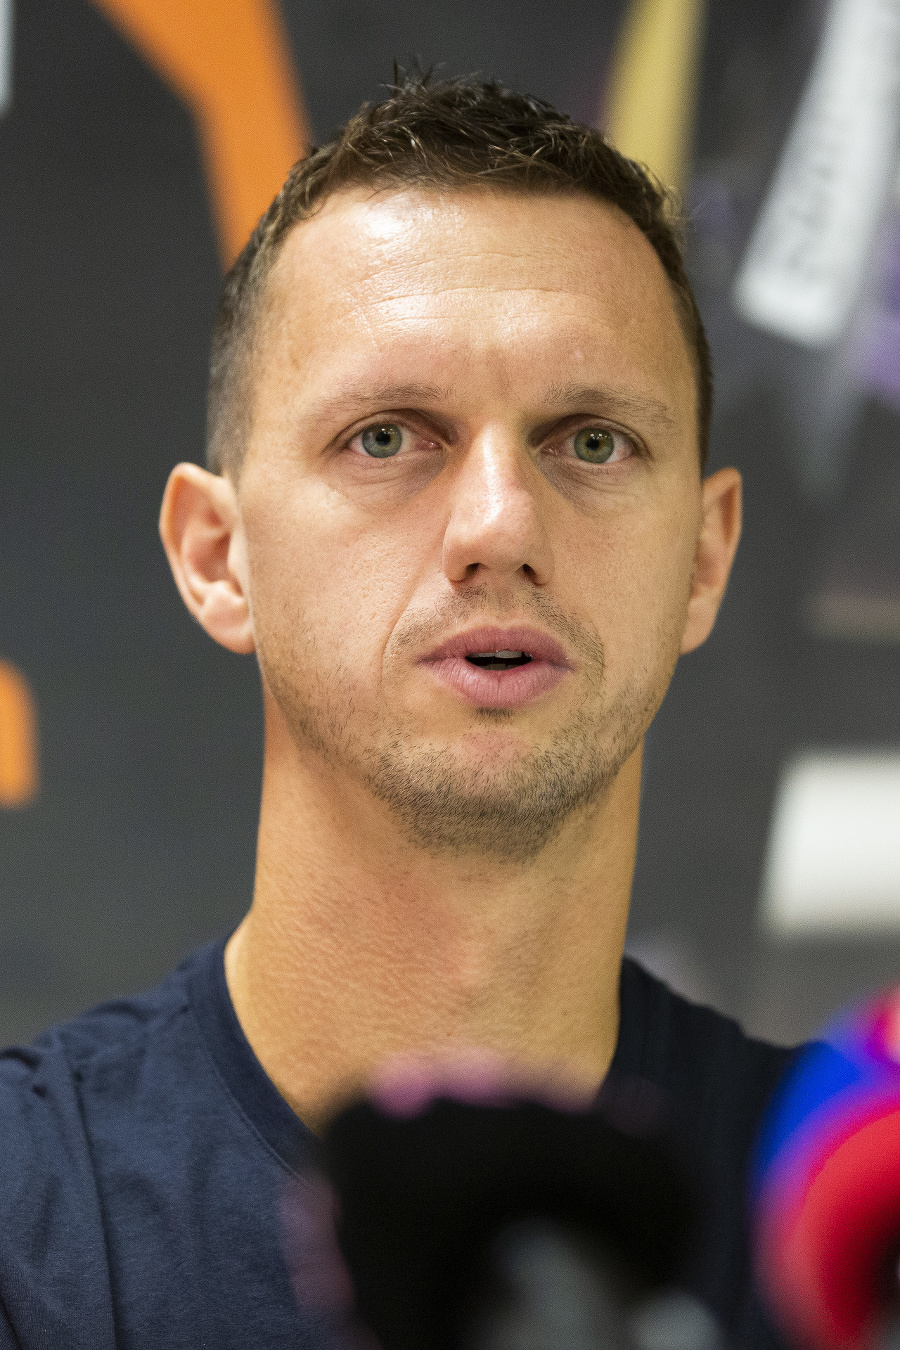 Slovenský tenista Filip Polášek